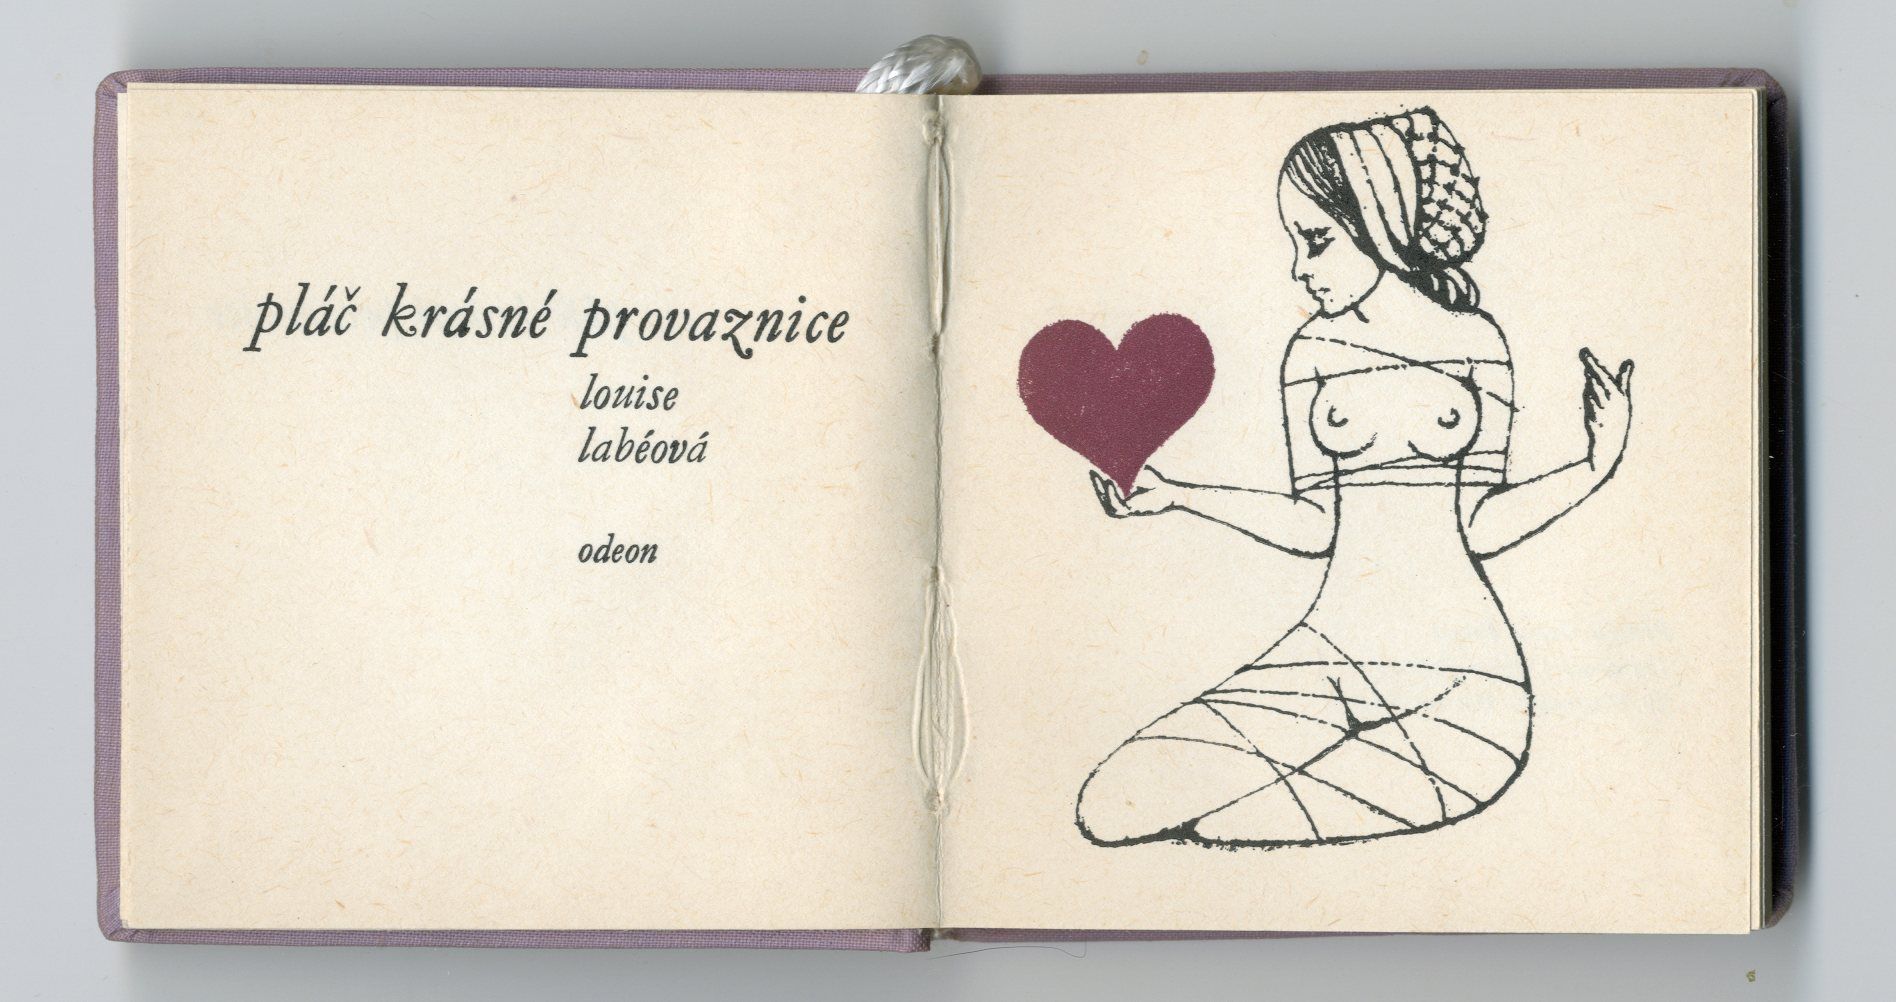 Titulní list Dagmar Berkové do knihy Pláč krásné provaznice, 1976